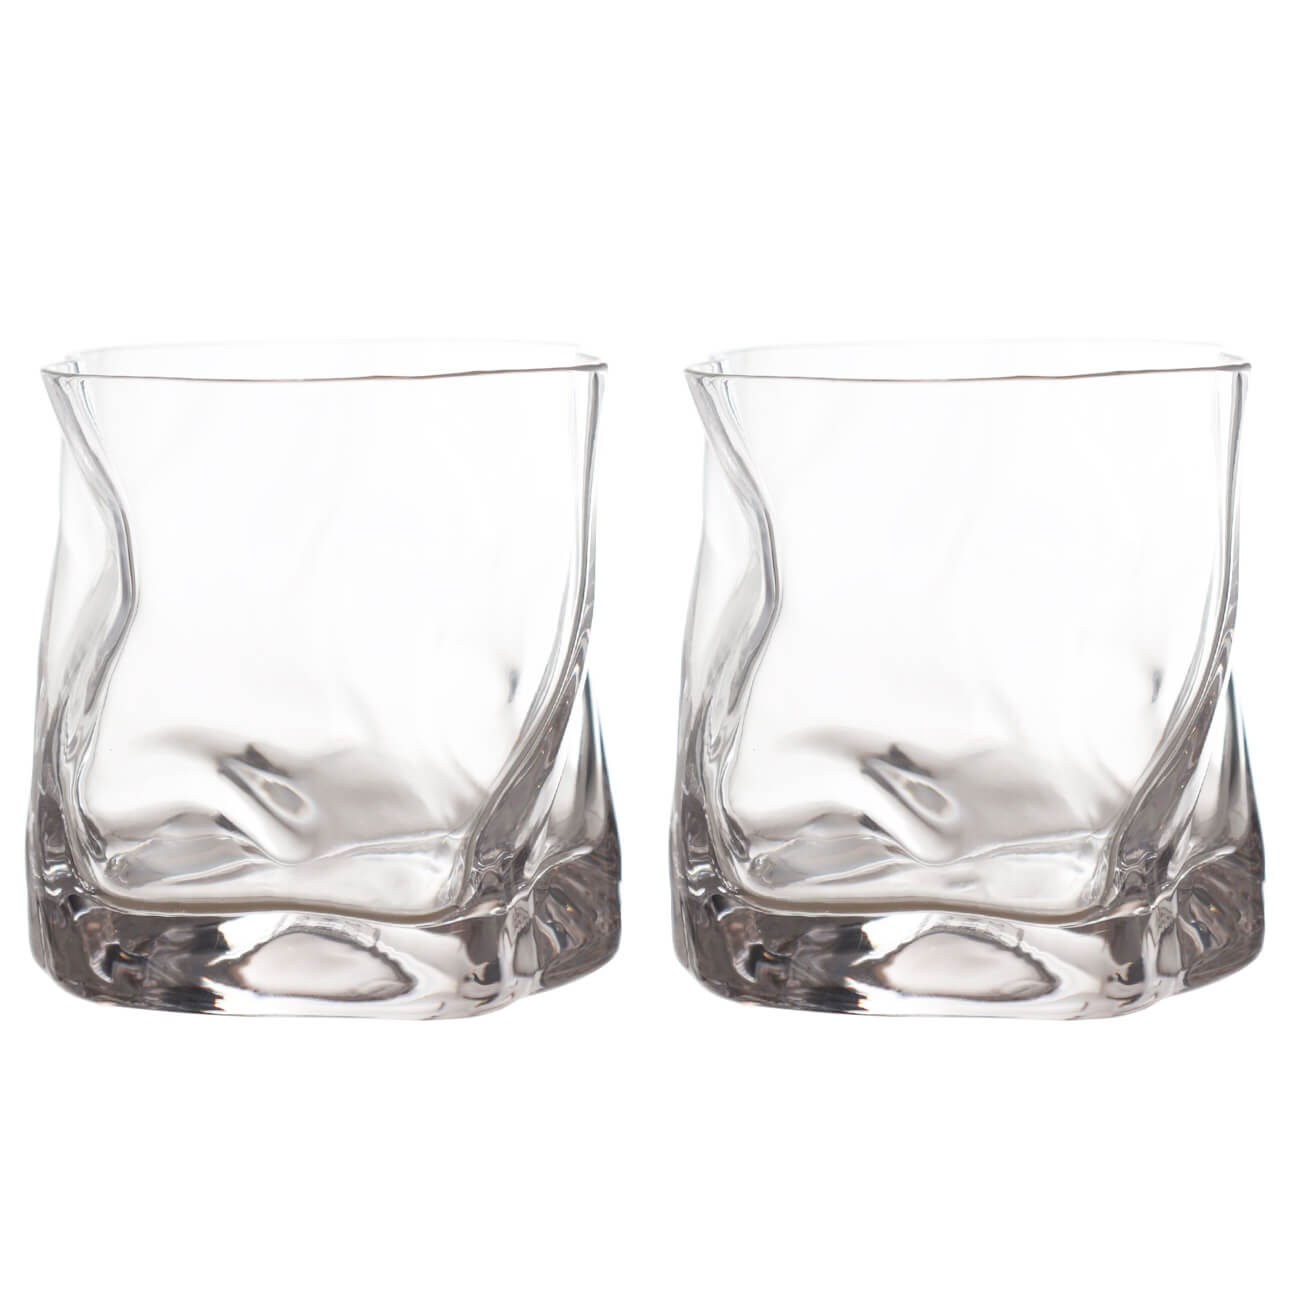 Стакан для виски, 245 мл, 2 шт, стекло, Slalom набор для виски 2 перс 6 пр стаканы кубики стекло р мрамор zero